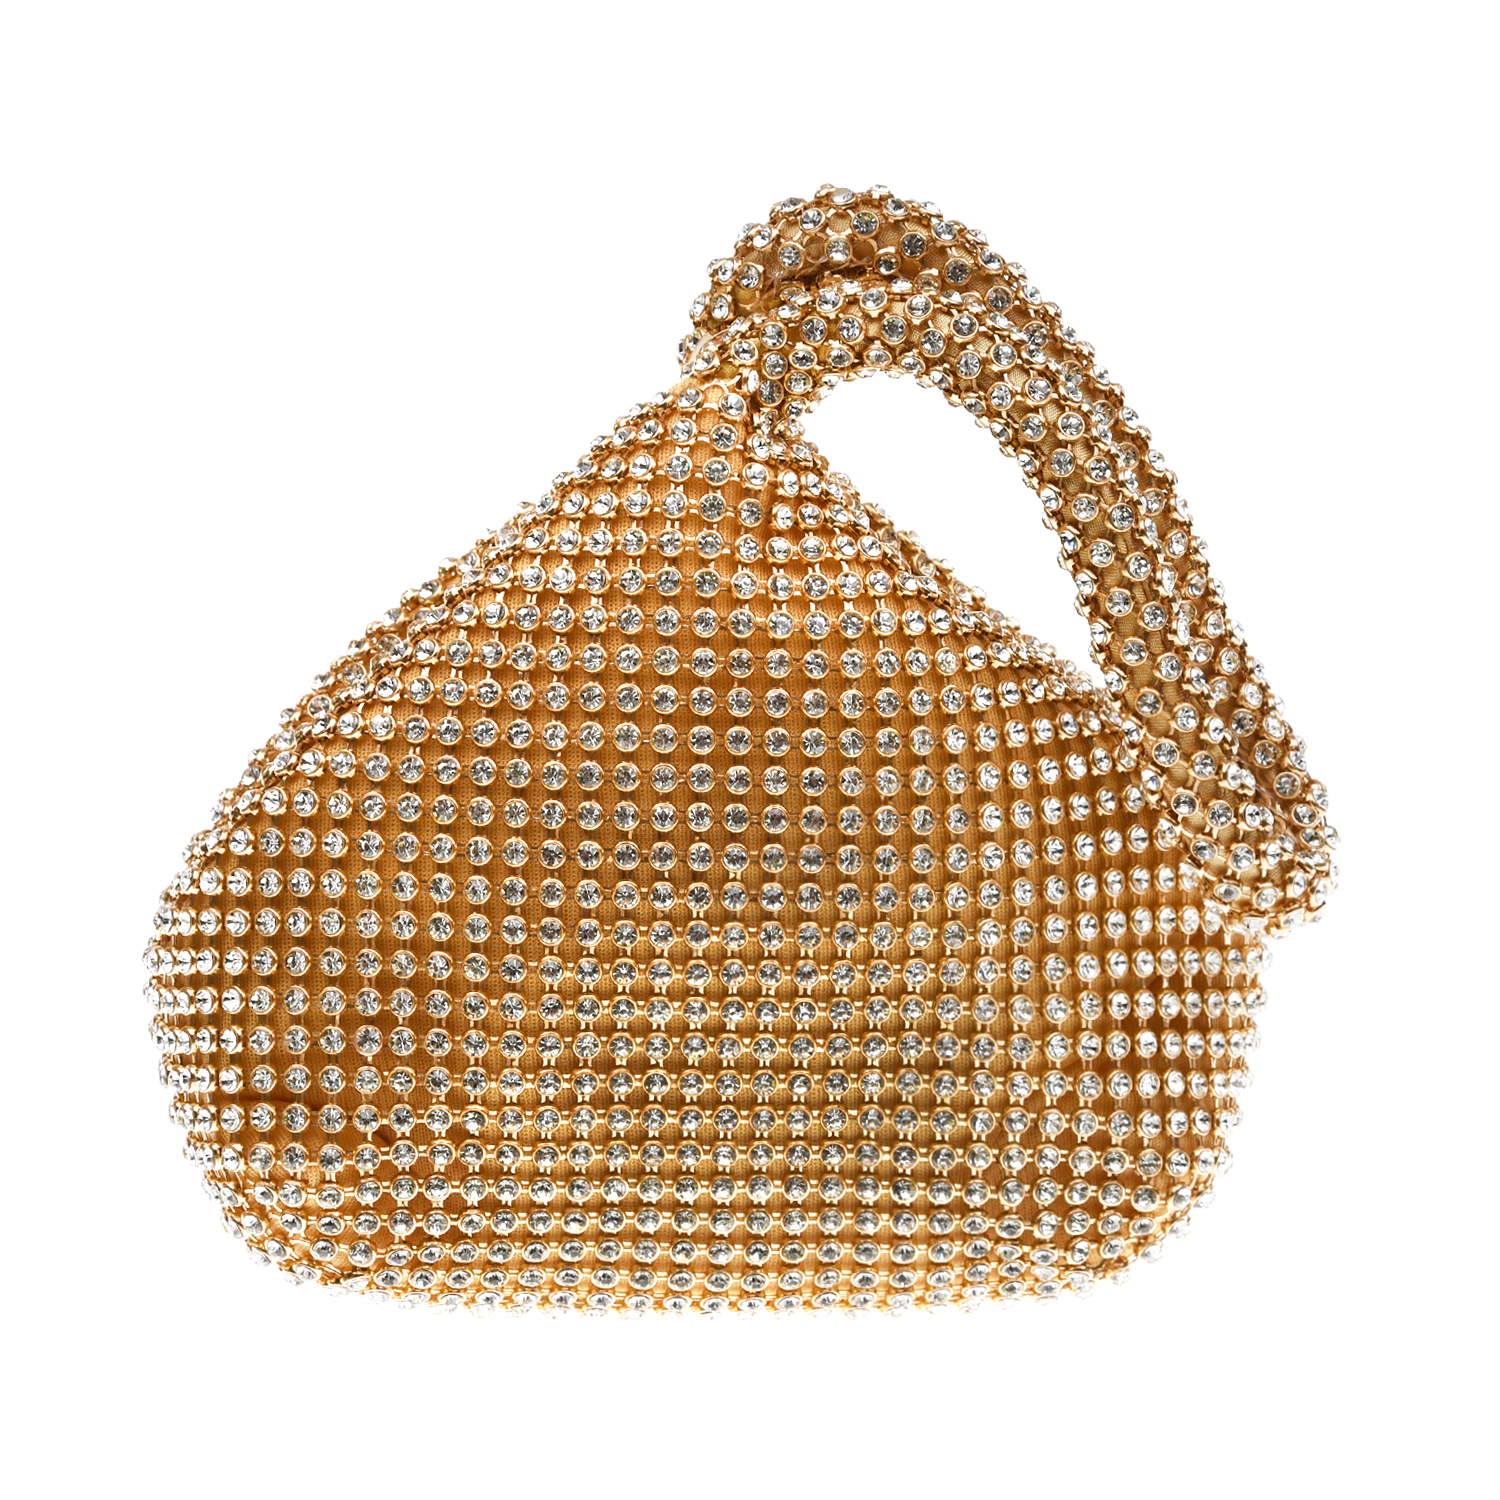 Золотистая сумка со стразами 12х6х13 см David Charles детская, размер unica, цвет золотой - фото 1